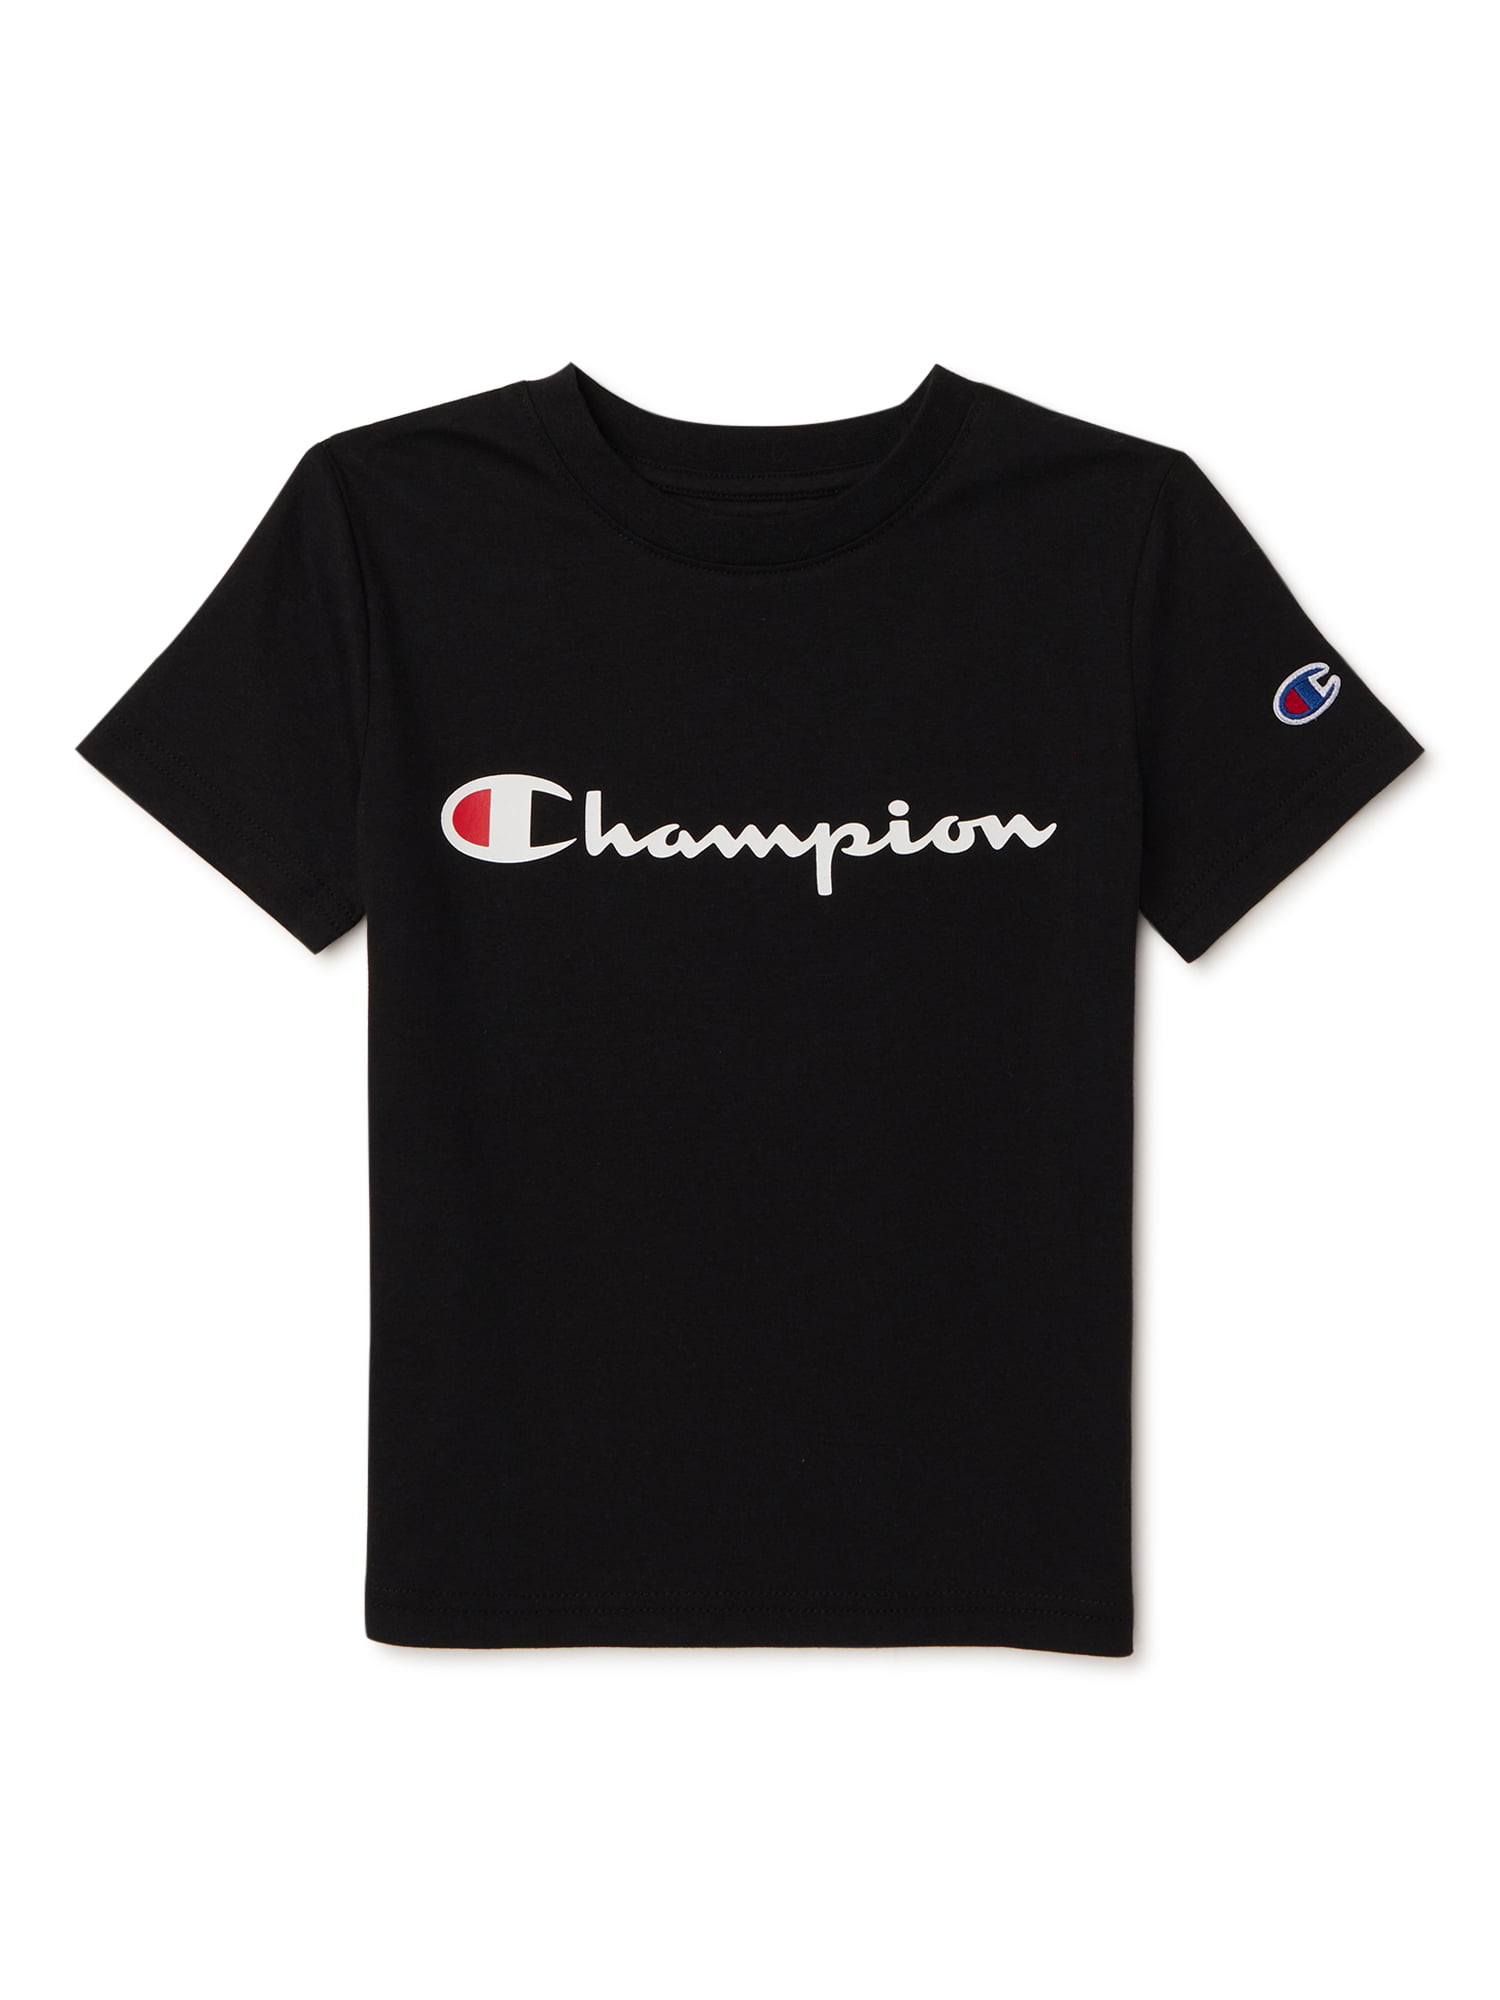 champion t shirt sizing